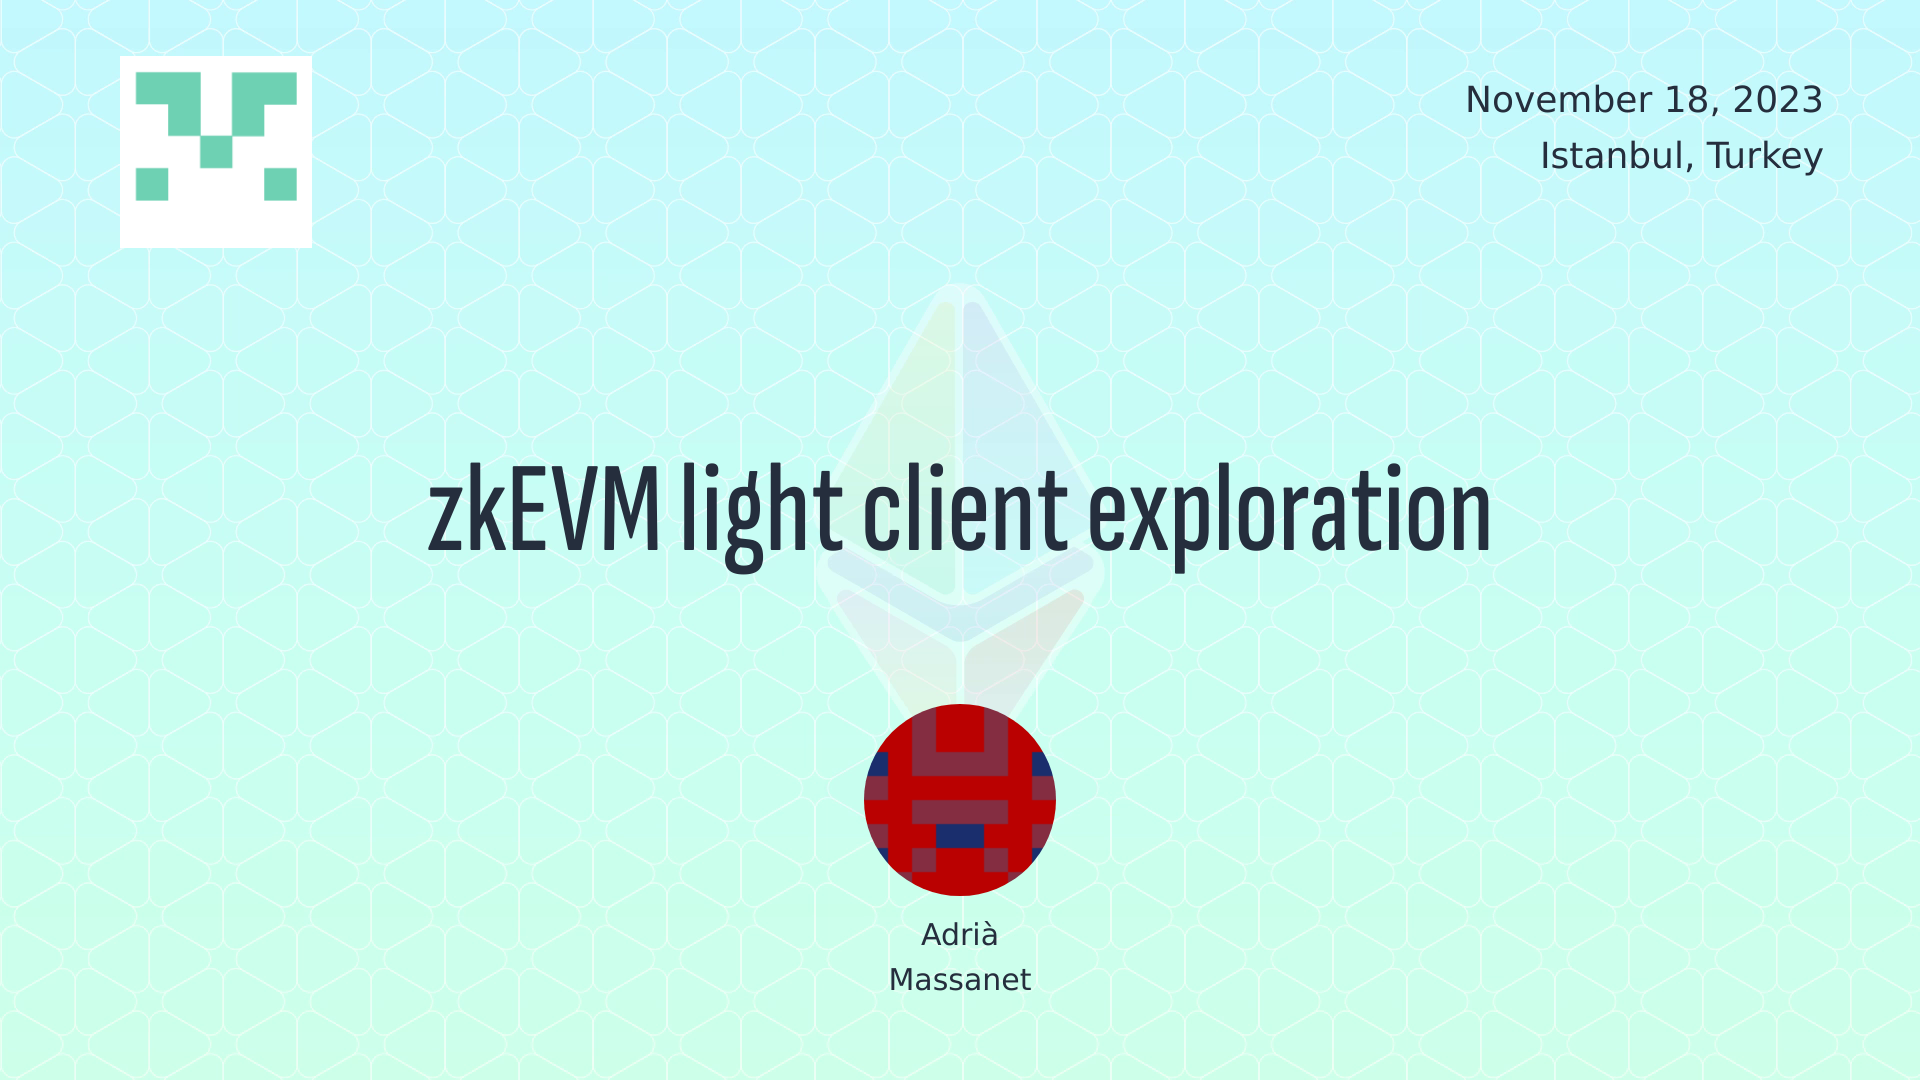 zkEVM light client exploration